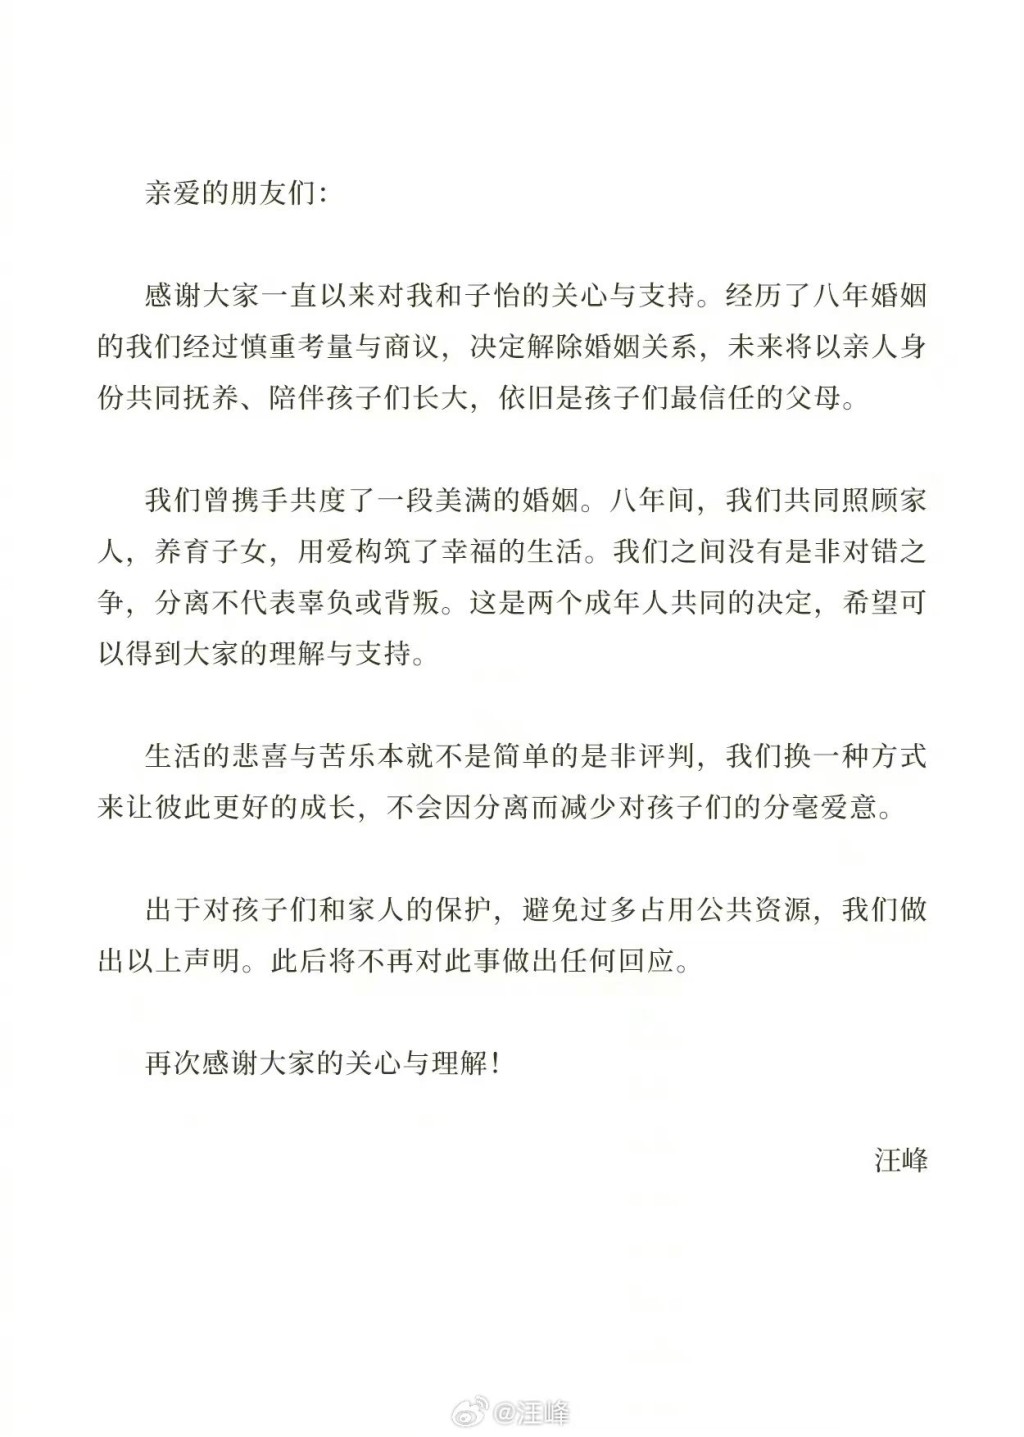 汪峰亦发出同样的声明承认离婚。